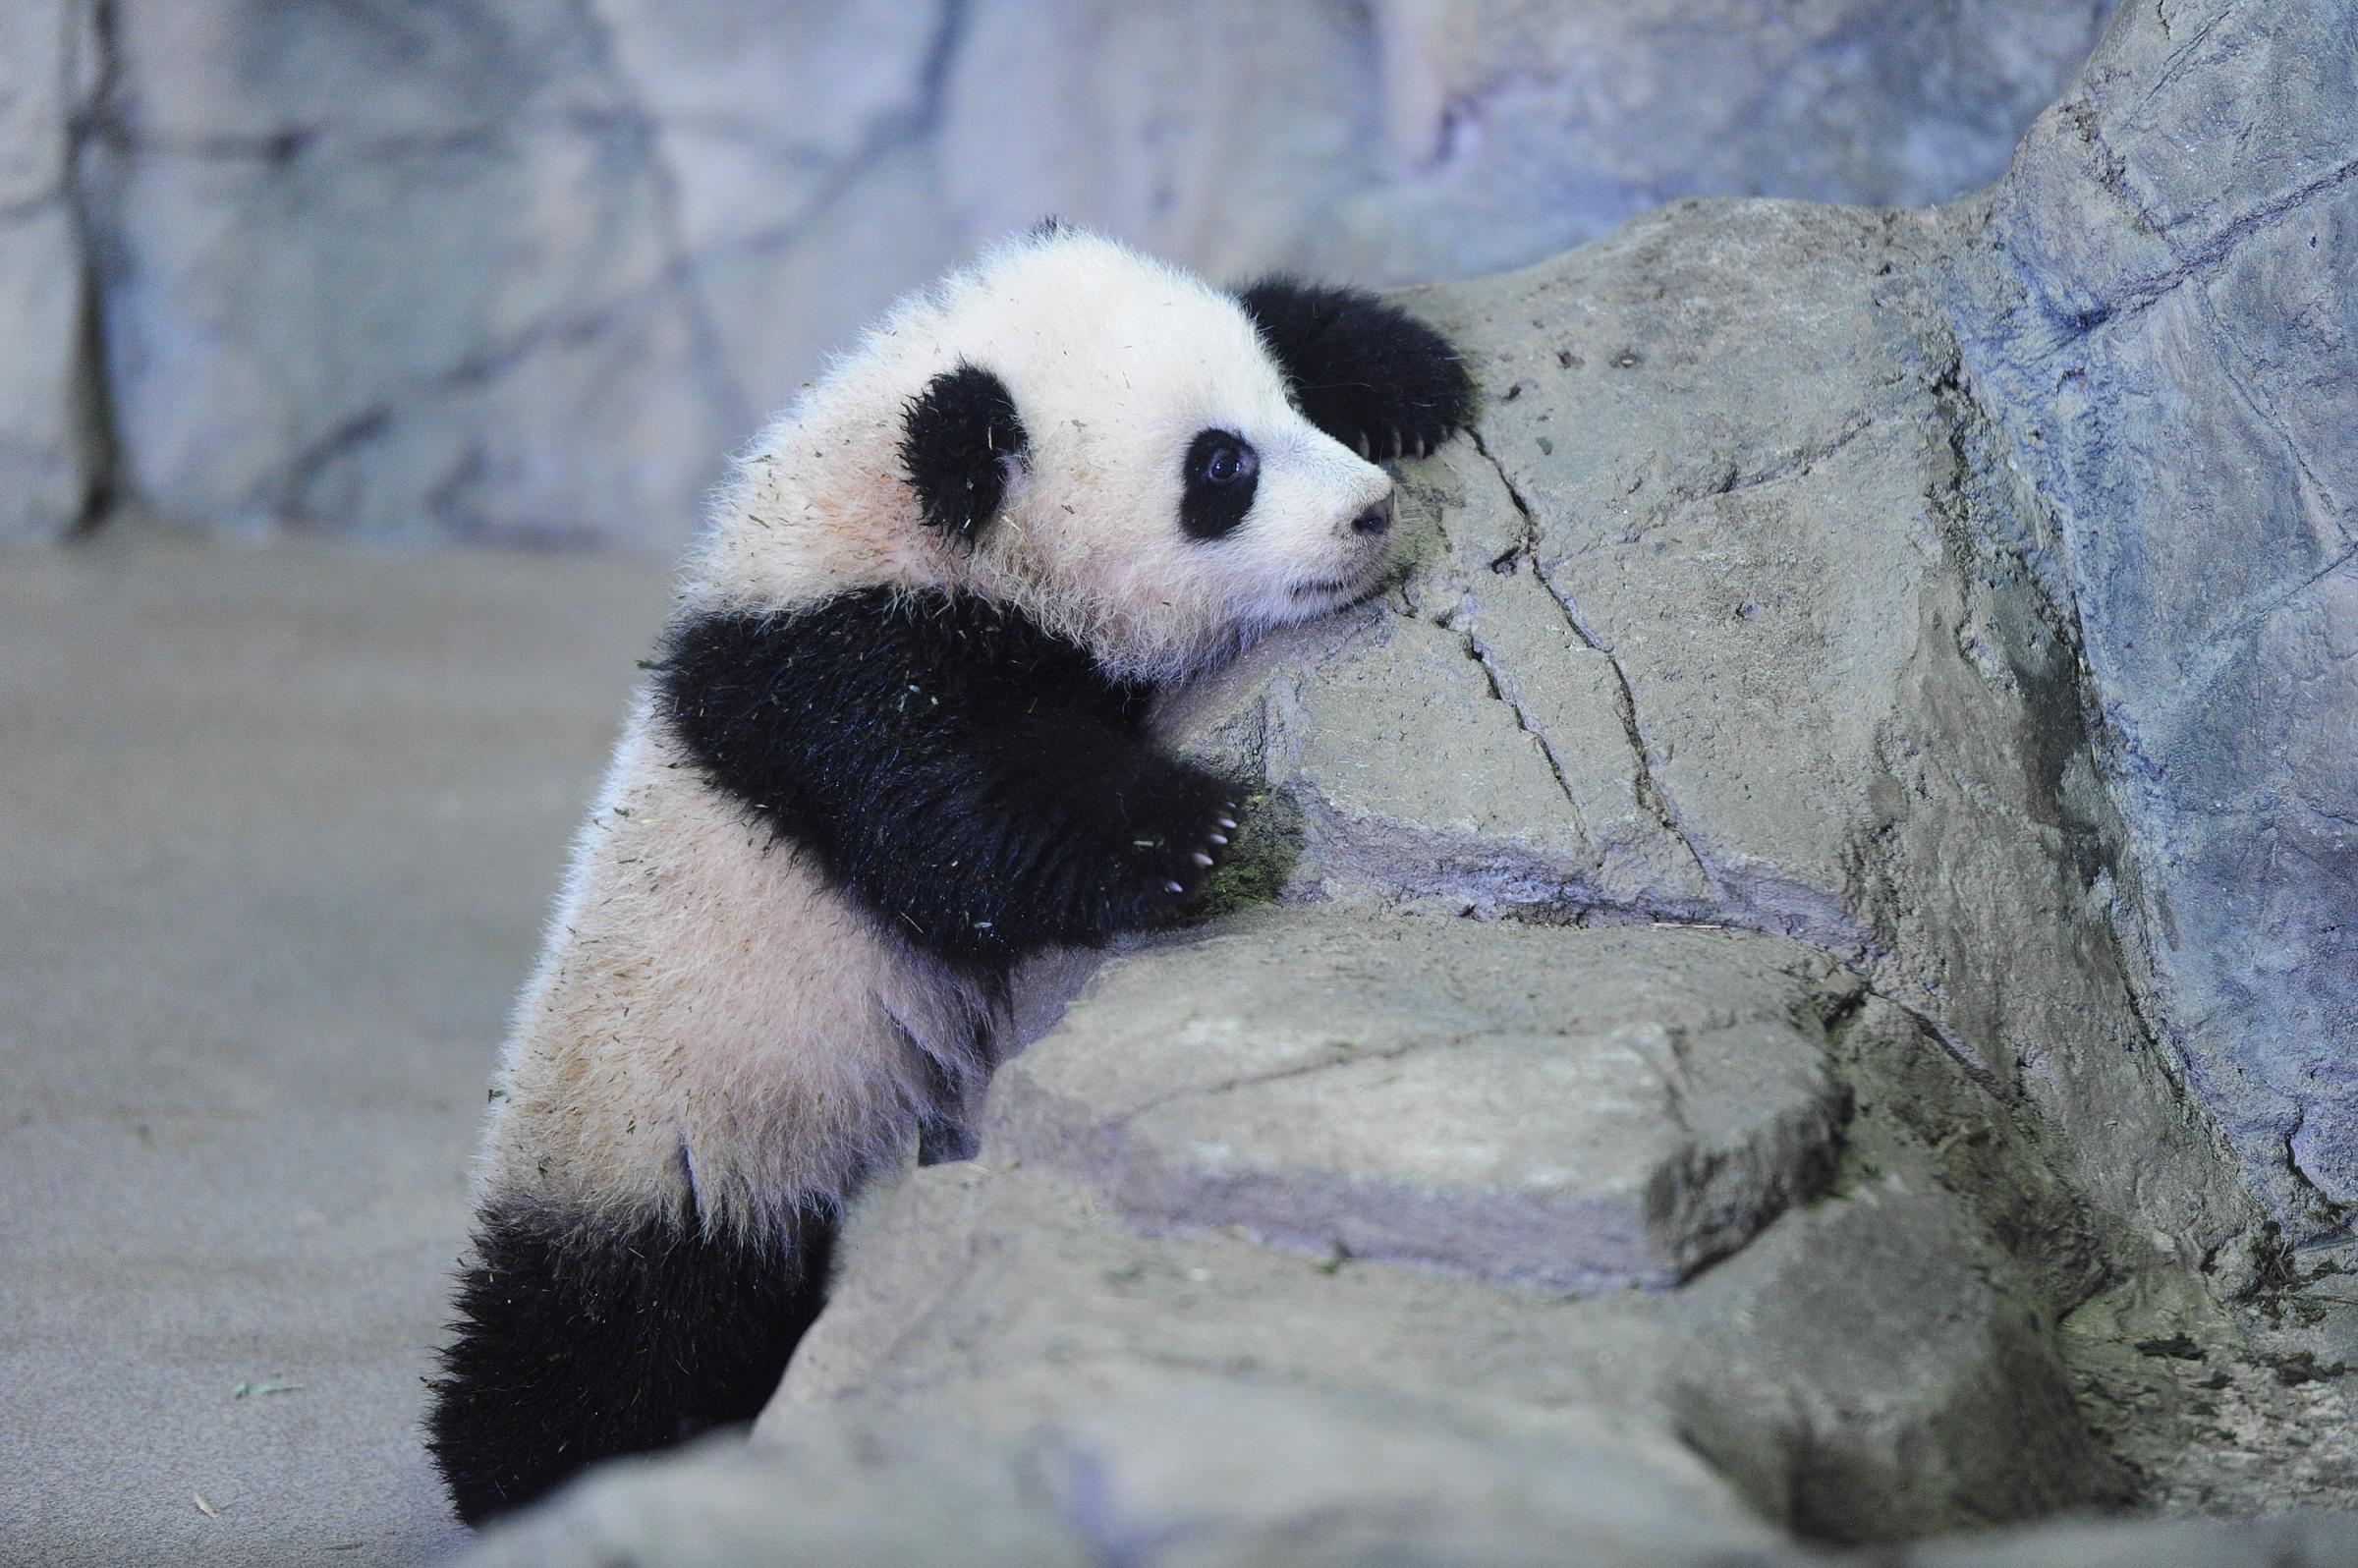 Giant Panda cub, Bao Bao - Washington, DC